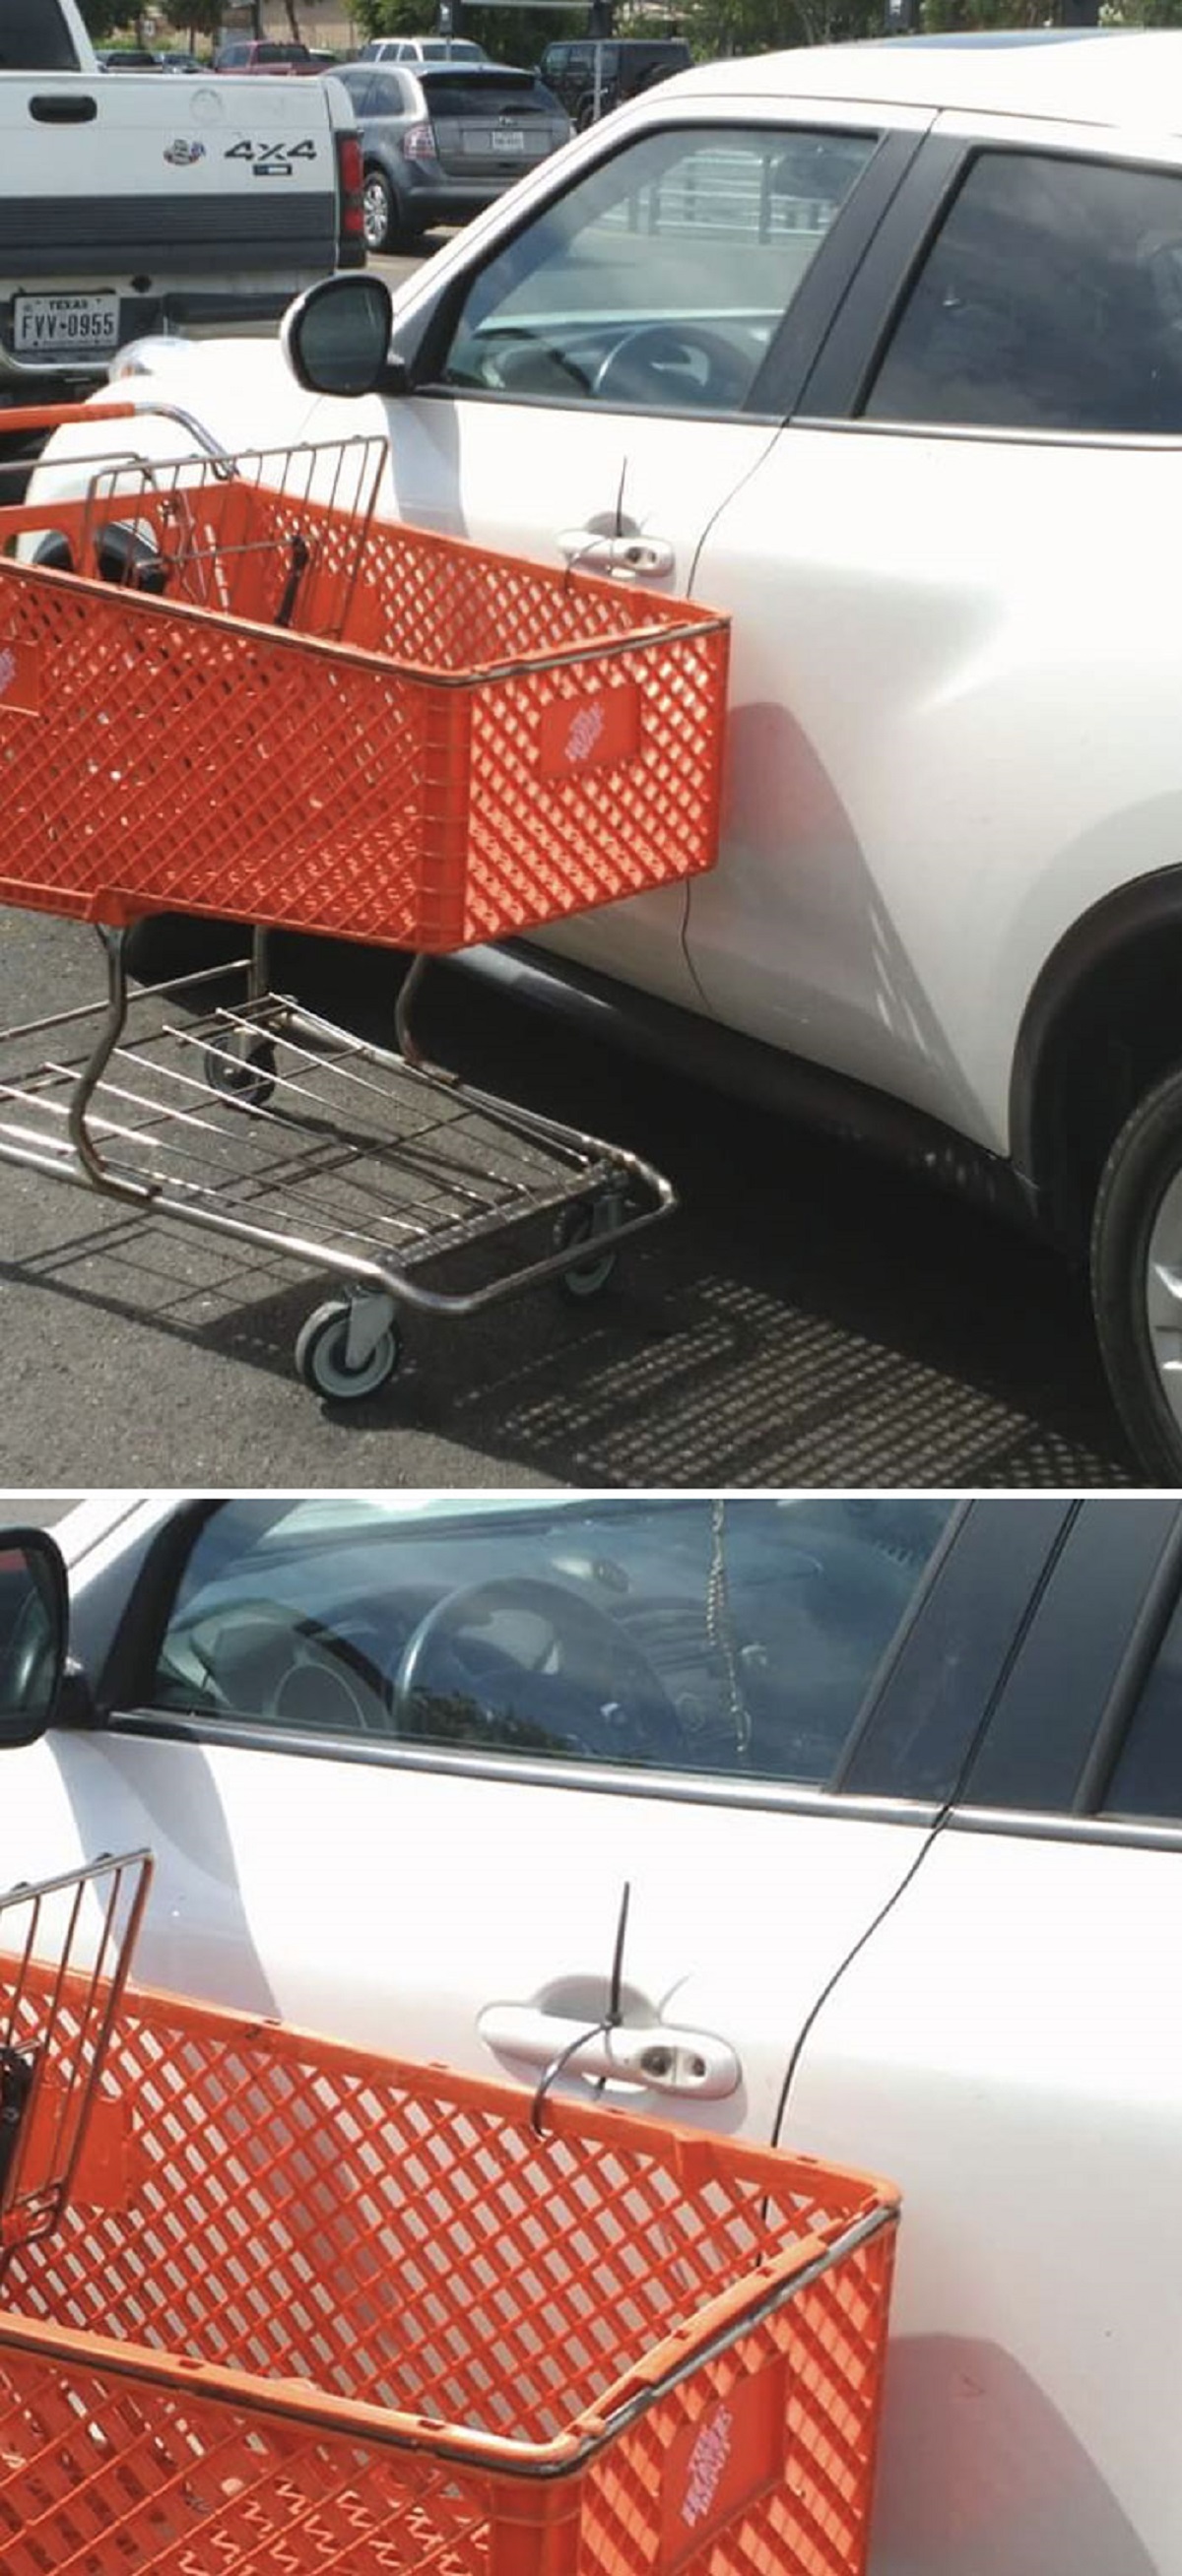 zip tie shopping cart to car